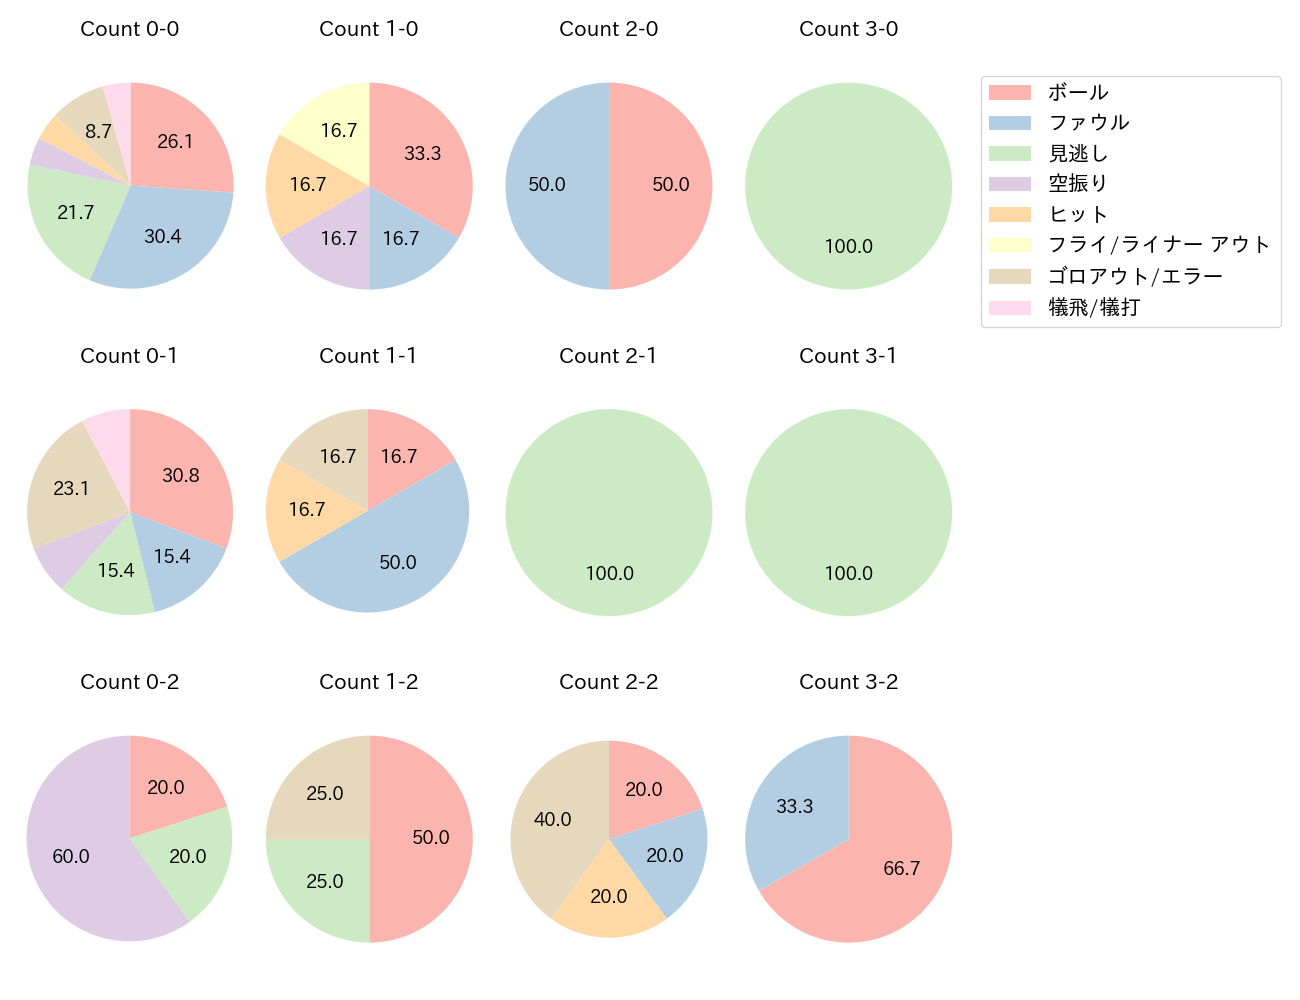 髙松 渡の球数分布(2021年9月)